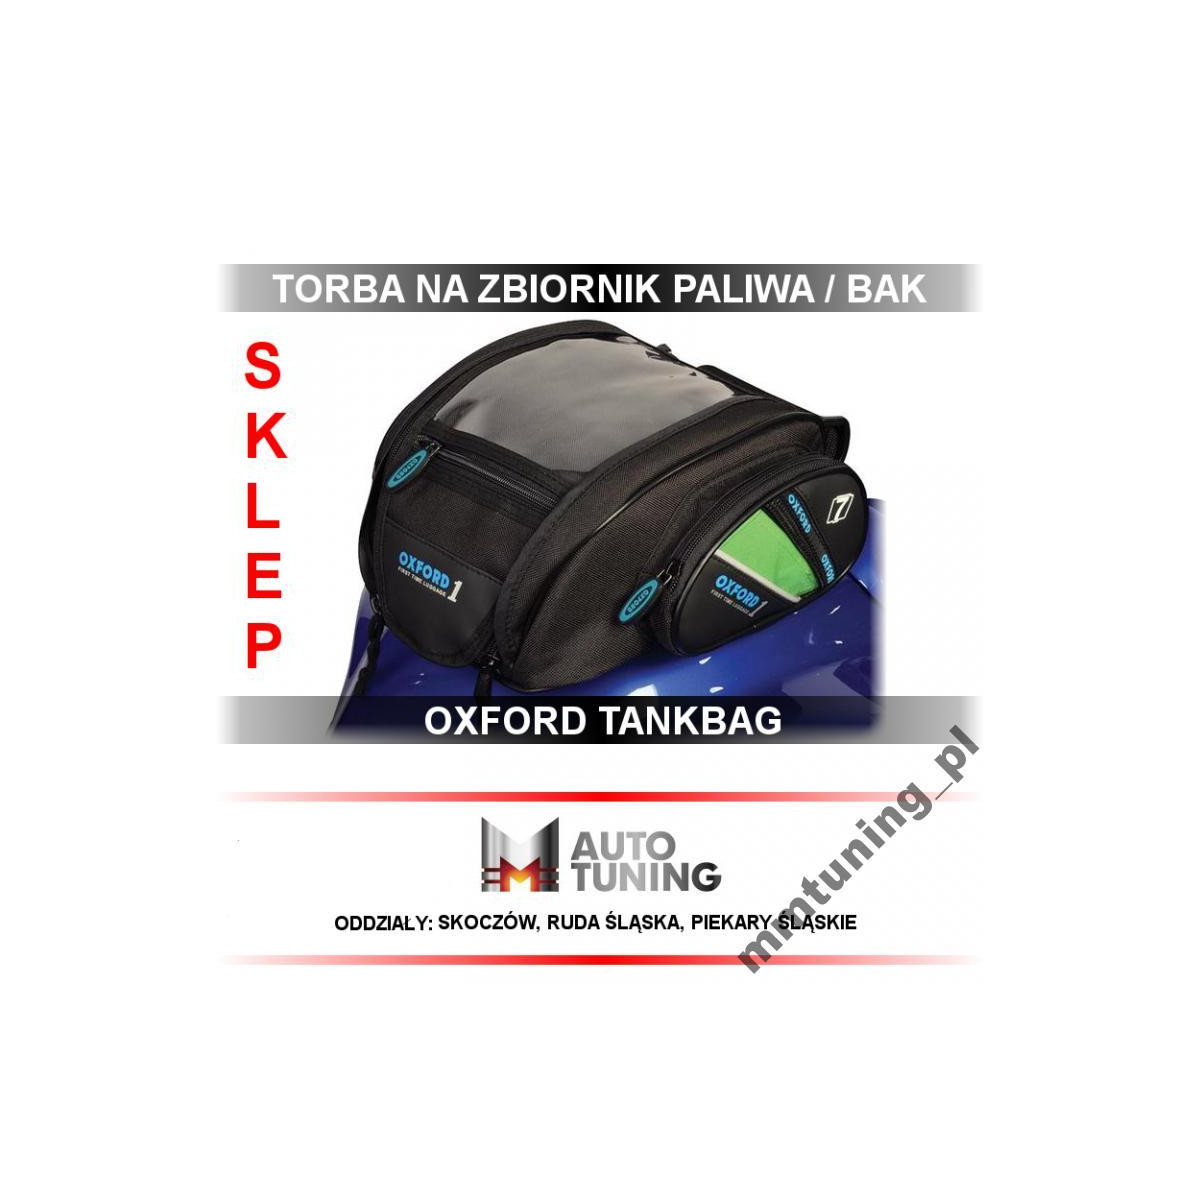 TORBA NA ZBIORNIK / BAK OXFORD TANKBAG 7L OL430